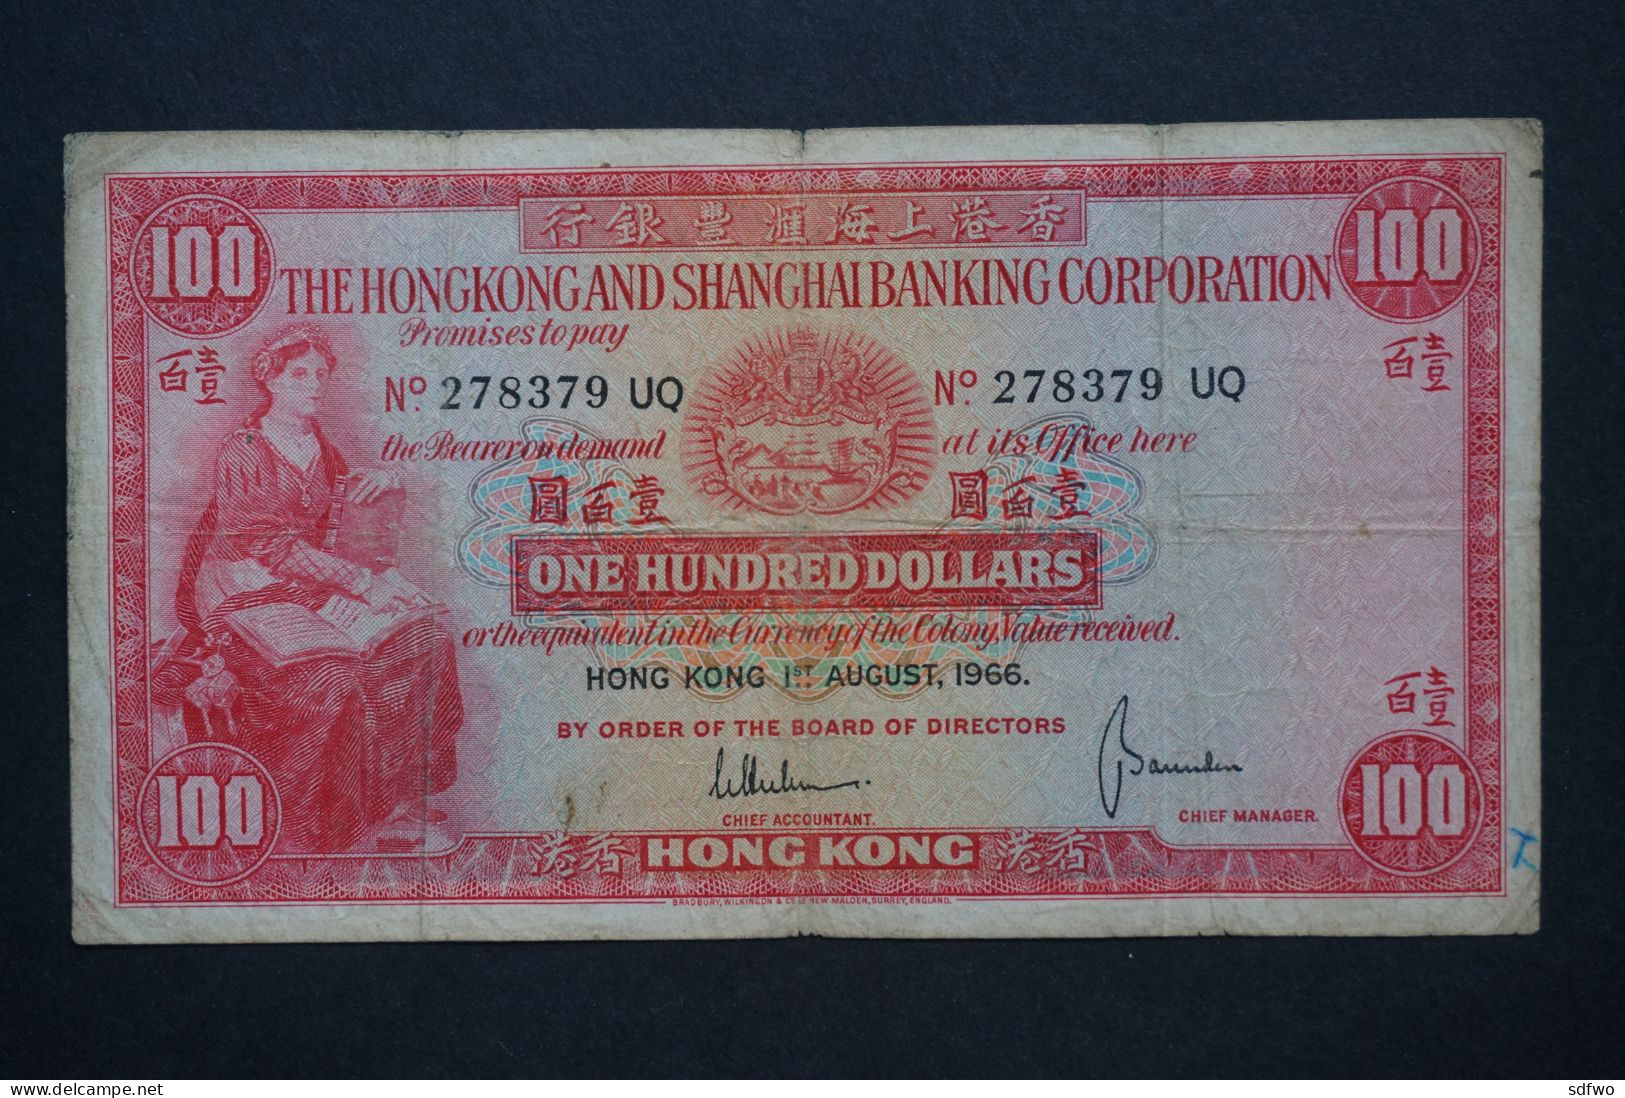 (Tv) 1966 HONG KONG OLD ISSUE - HSBC 100 DOLLARS #278379 UQ - Hong Kong